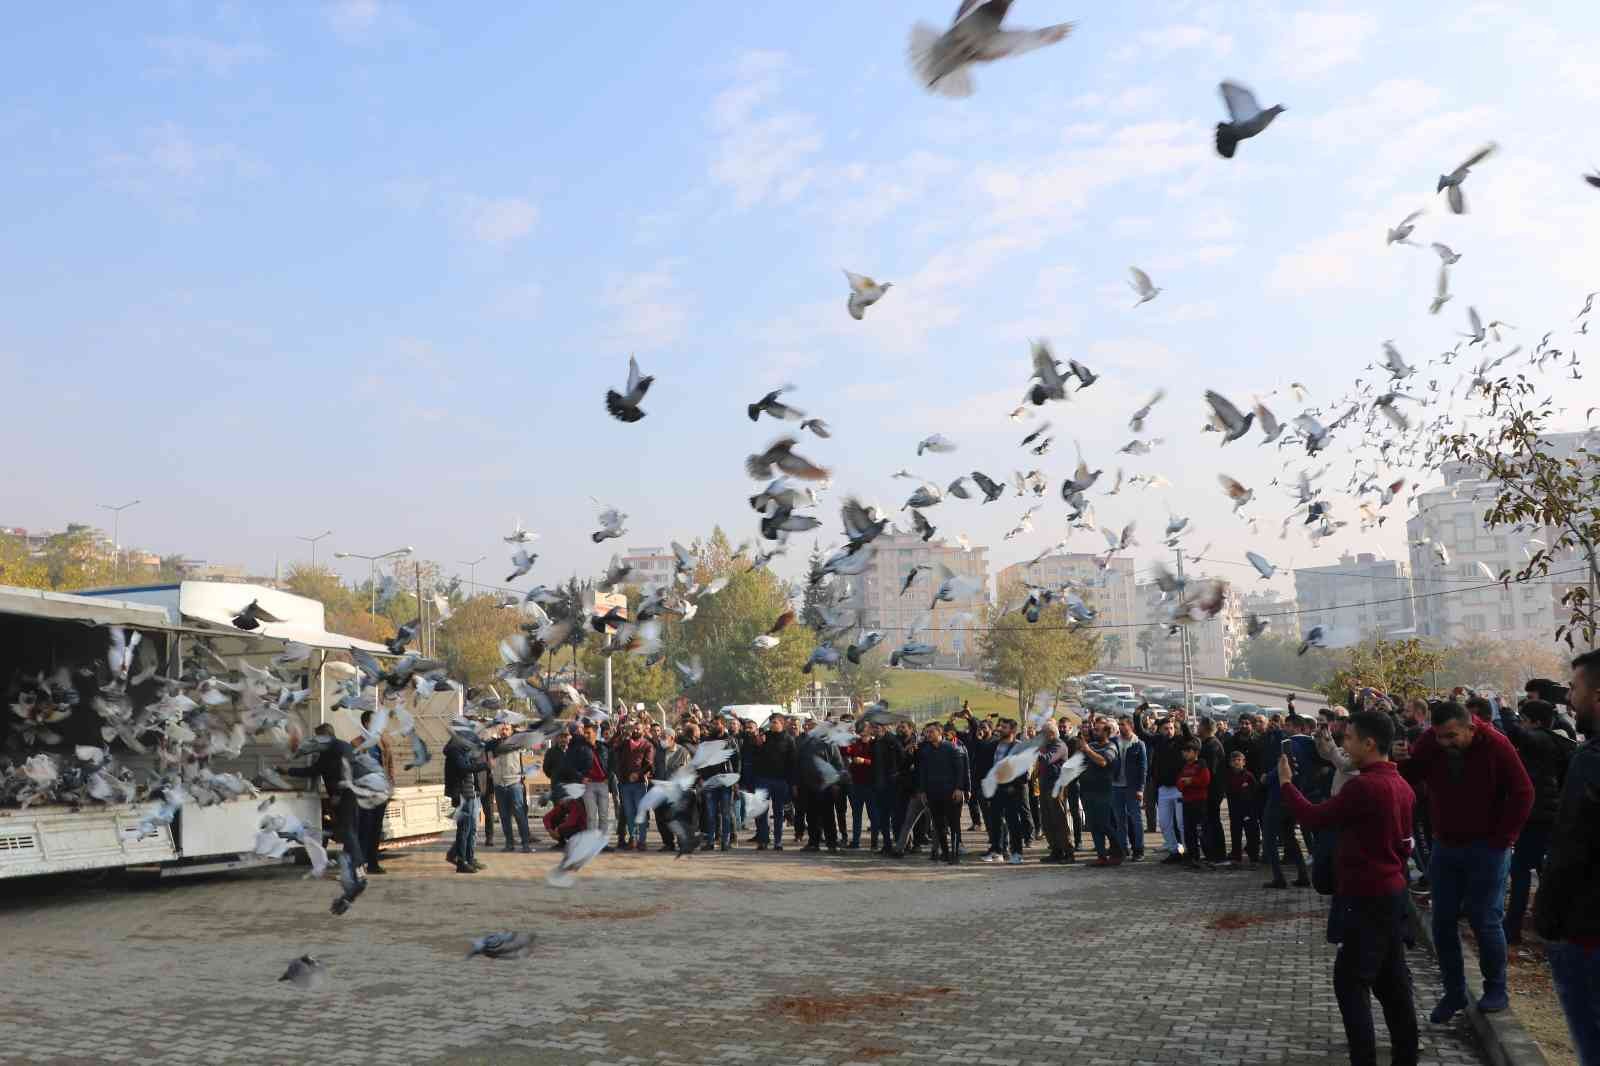 Kahramanmaraş’ta 6 bin güvercin gökyüzüne salındı #kahramanmaras